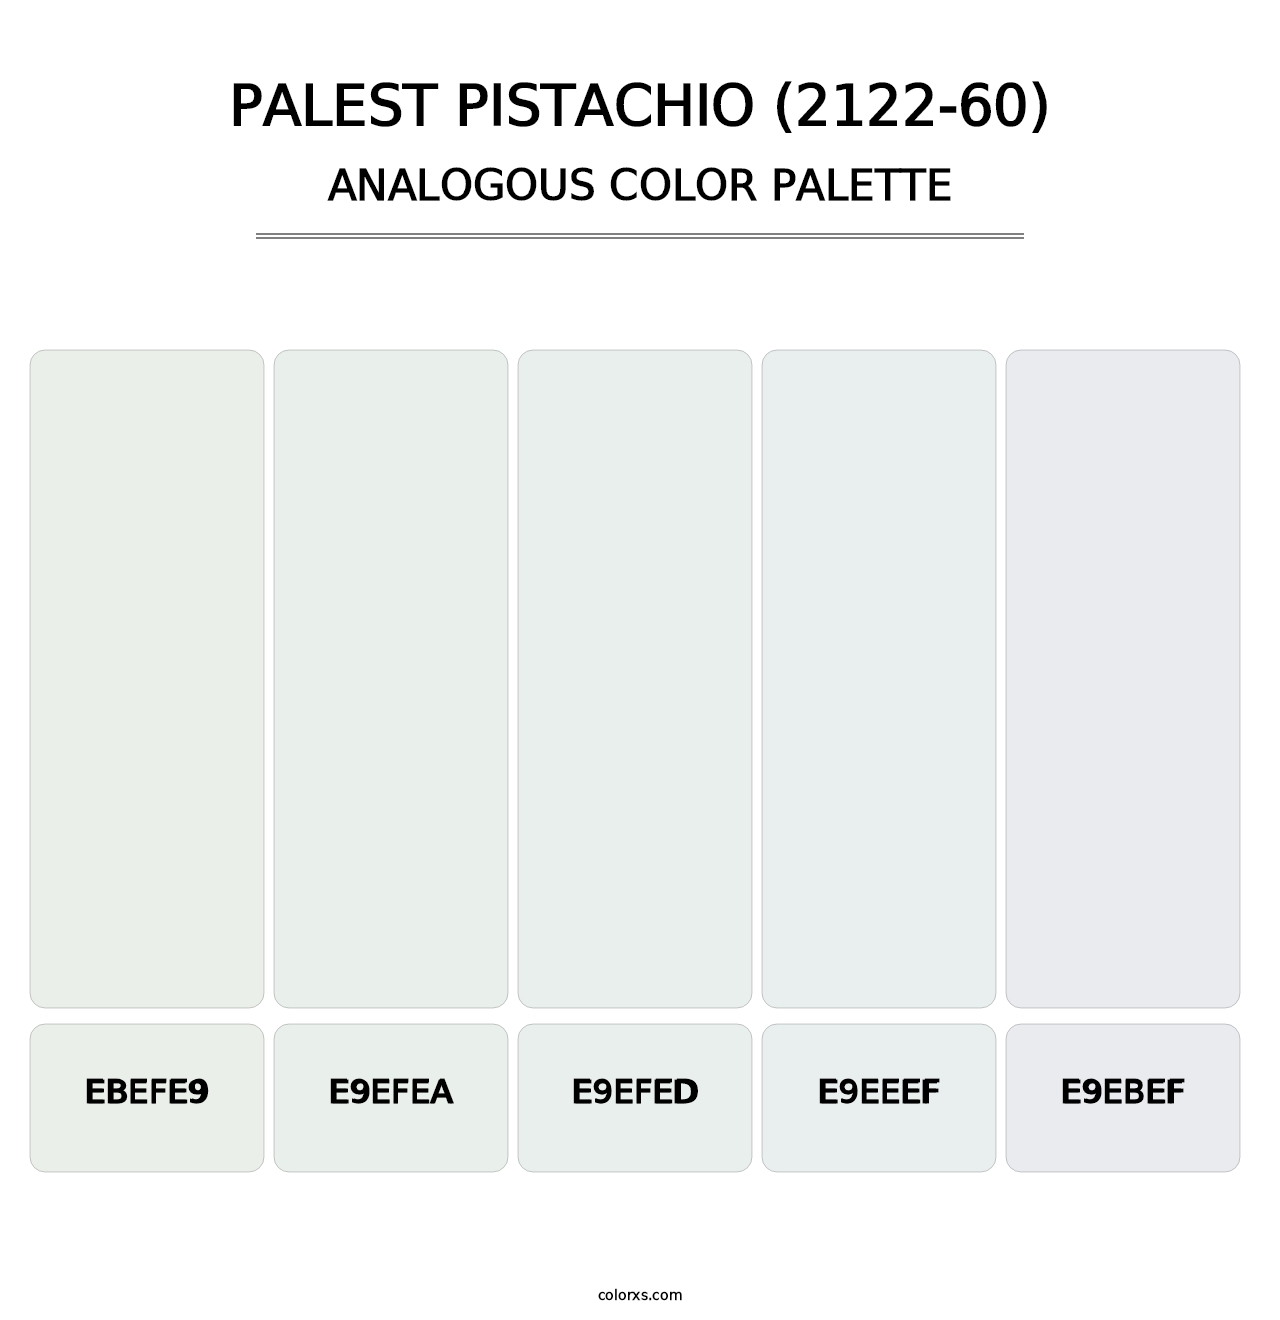 Palest Pistachio (2122-60) - Analogous Color Palette